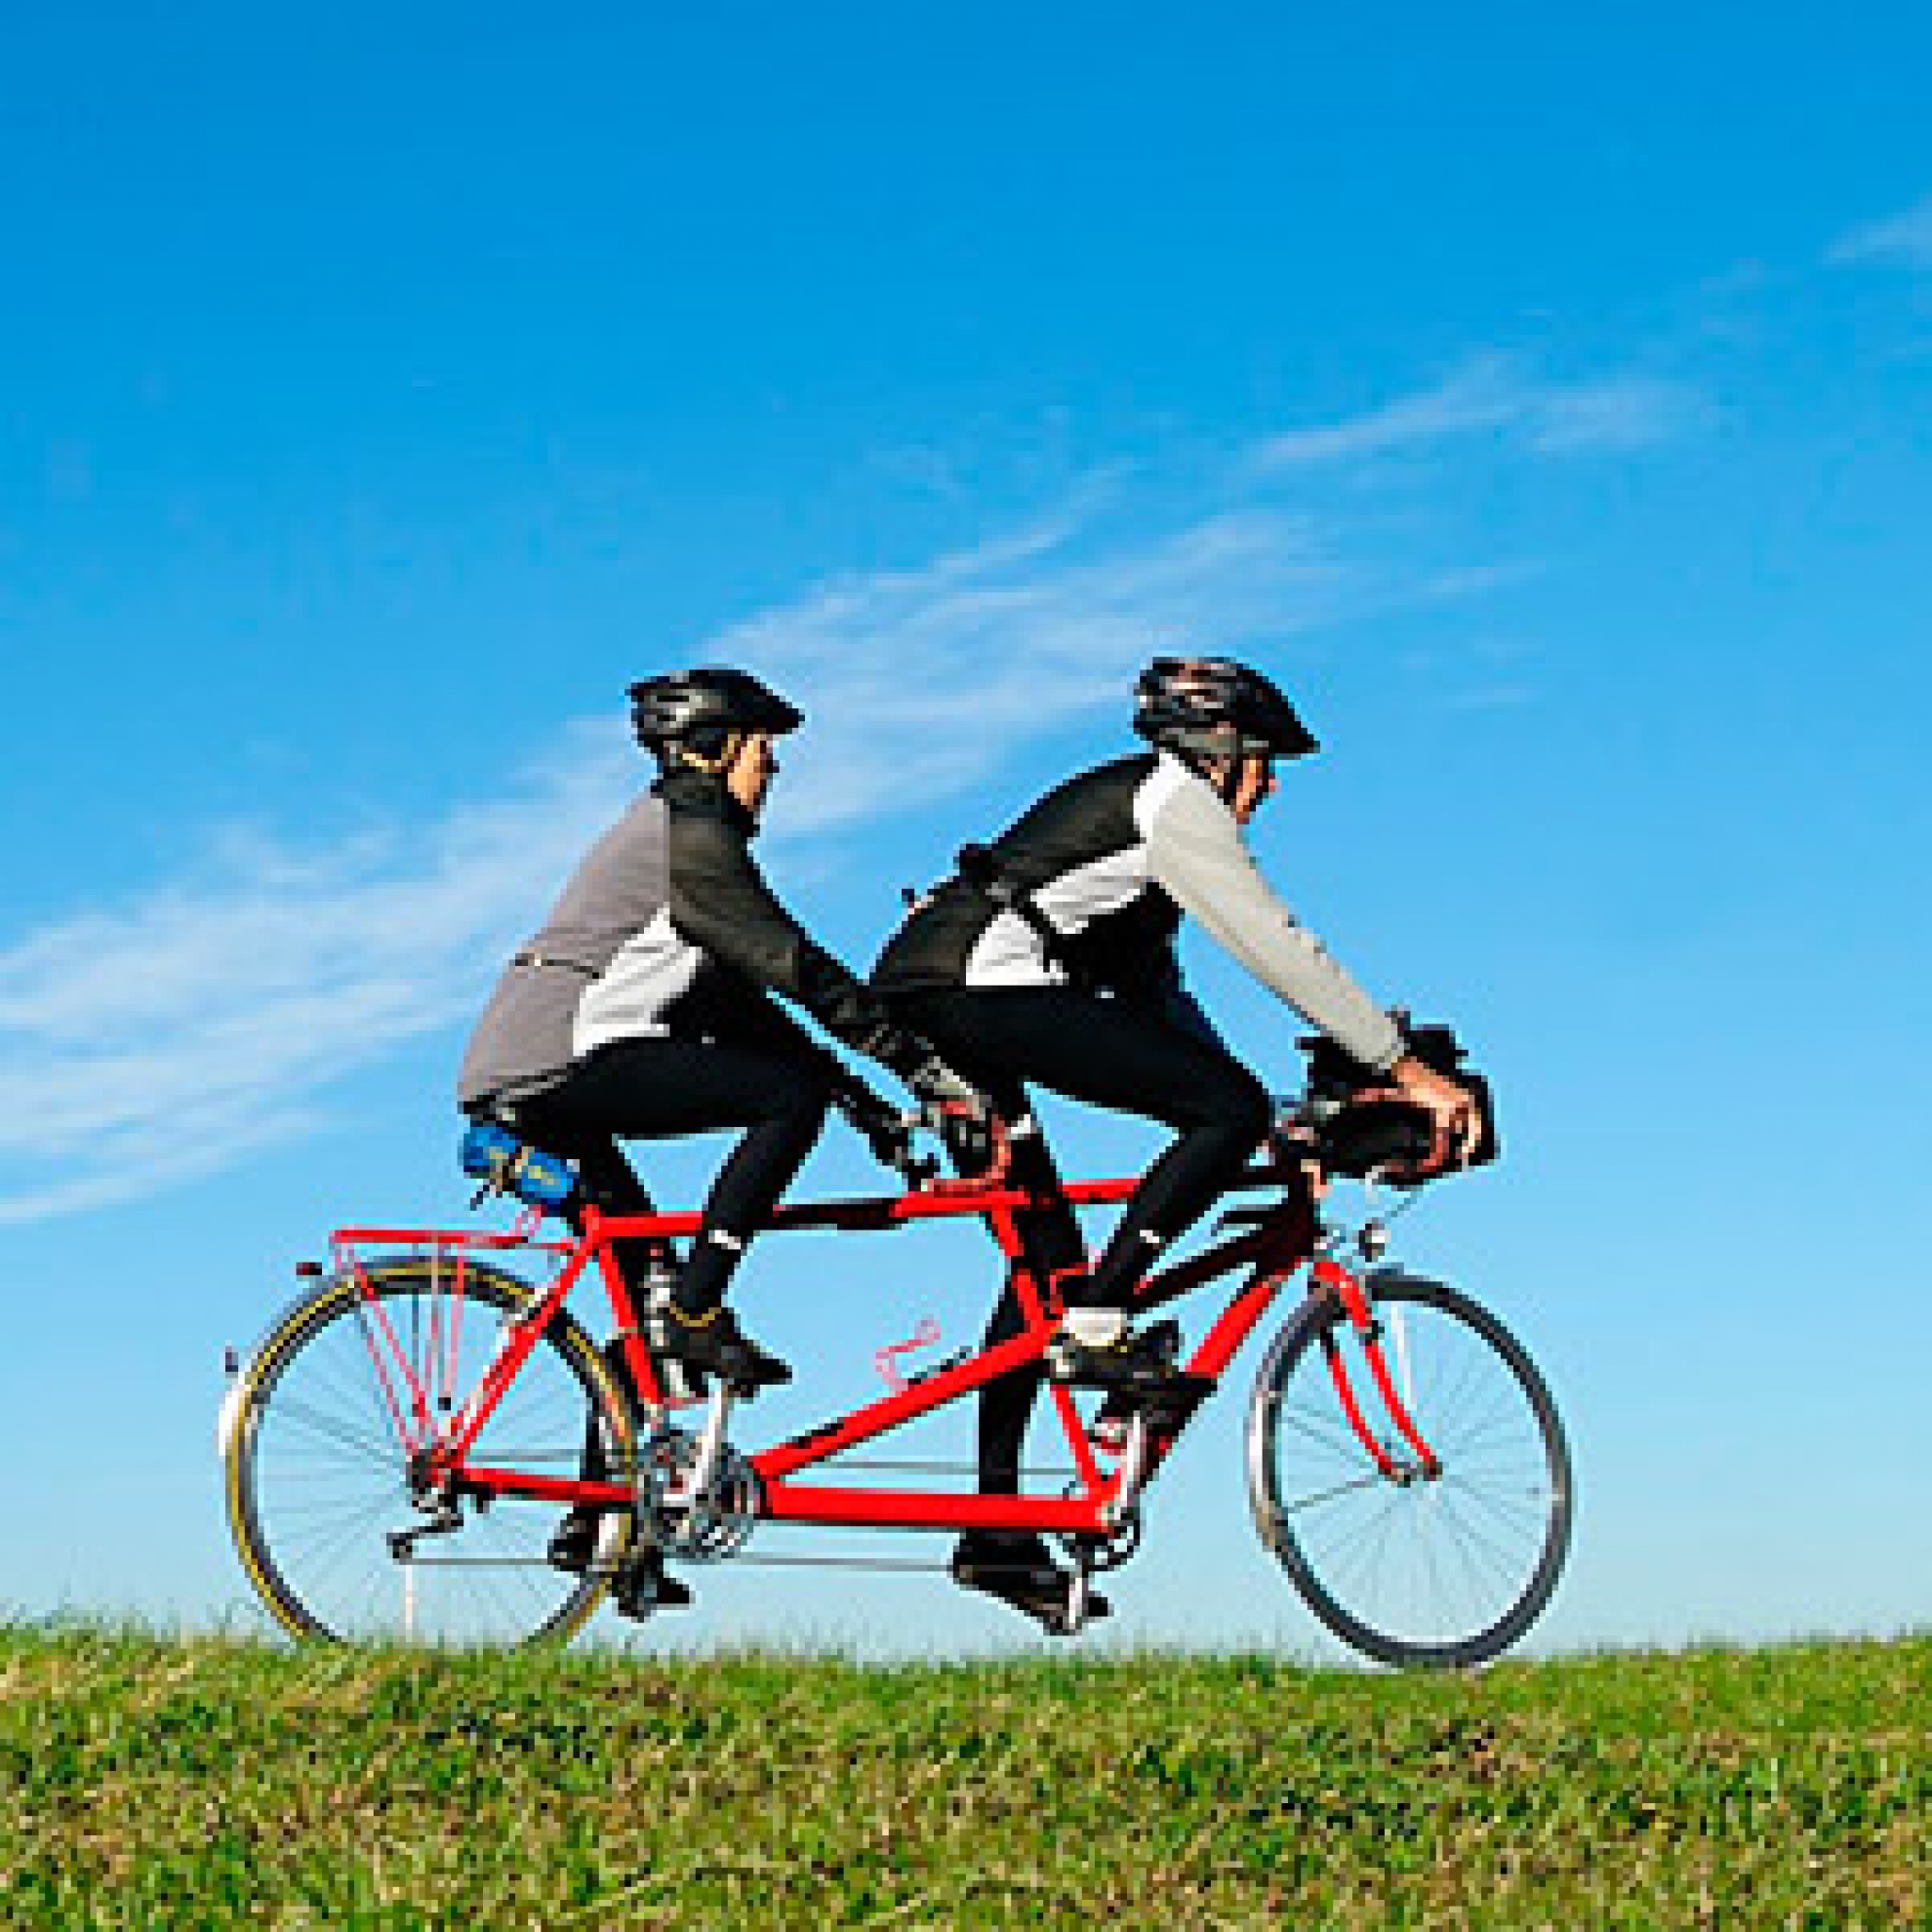 Bicicletas tandem 2 personas en alquiler - Cambrils Salou Alquiler